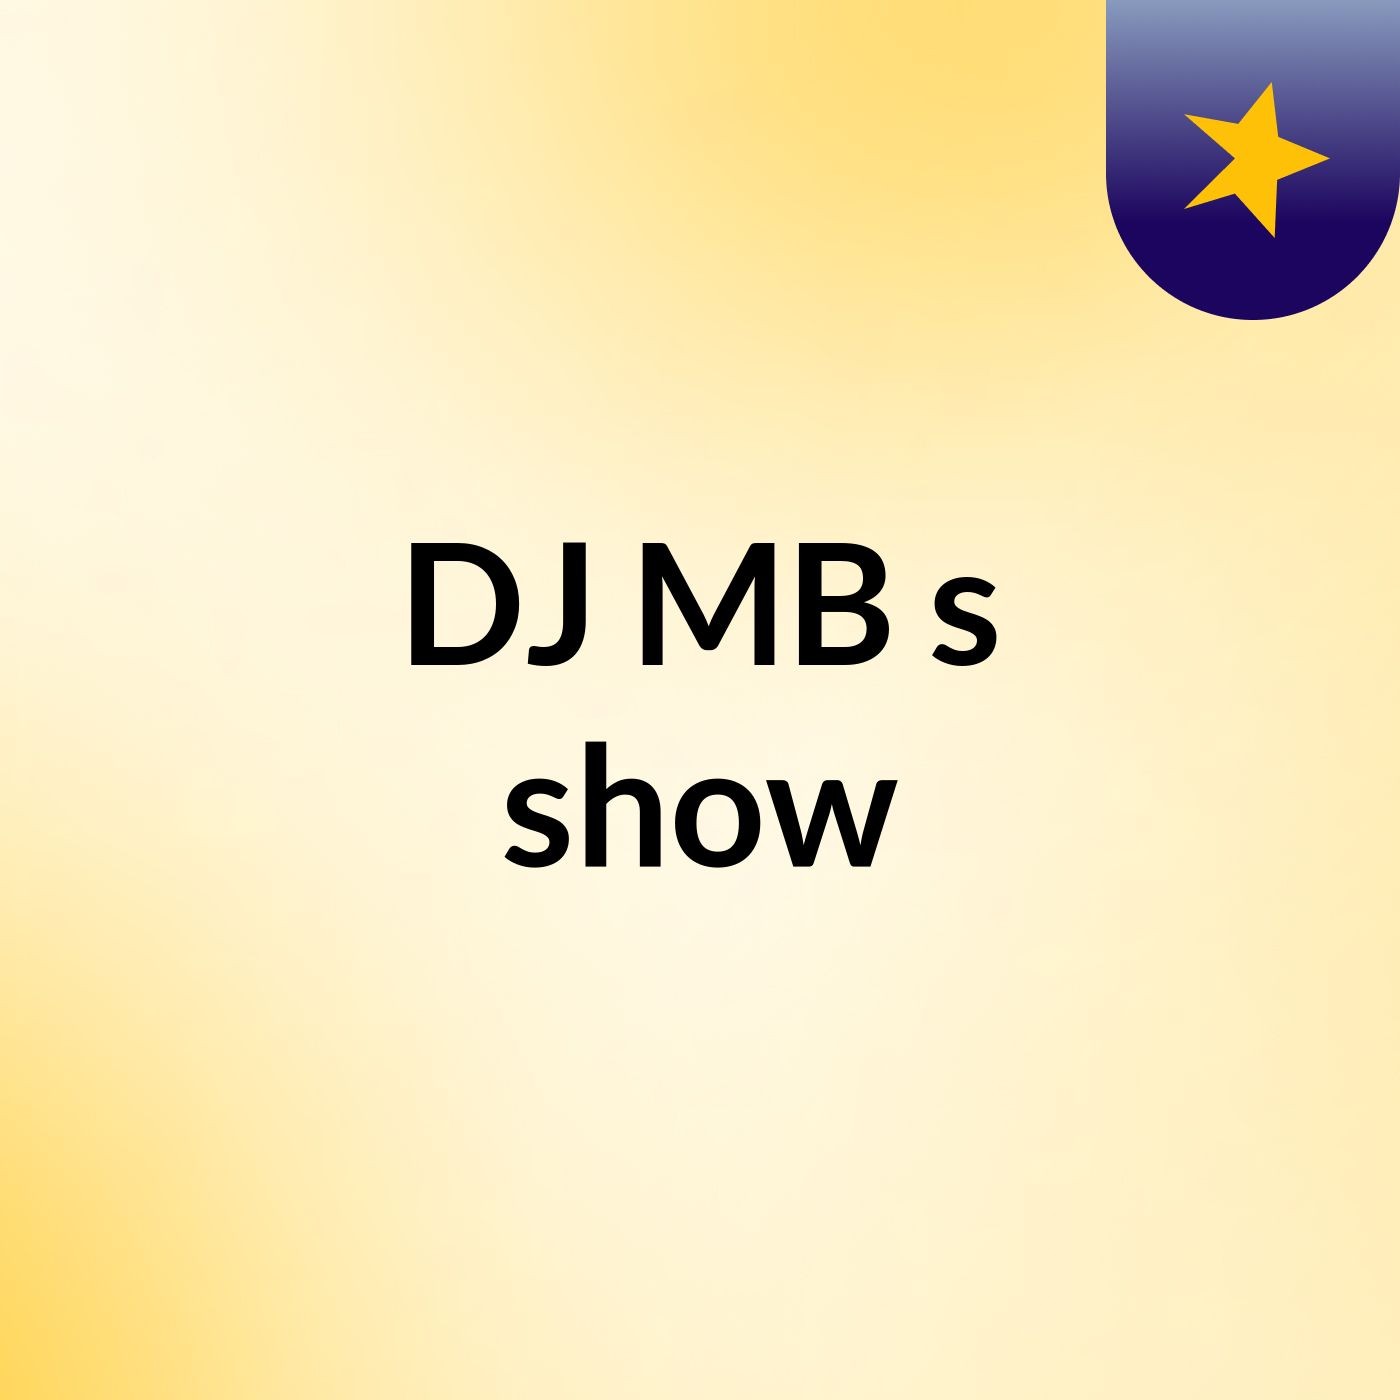 DJ MB's show